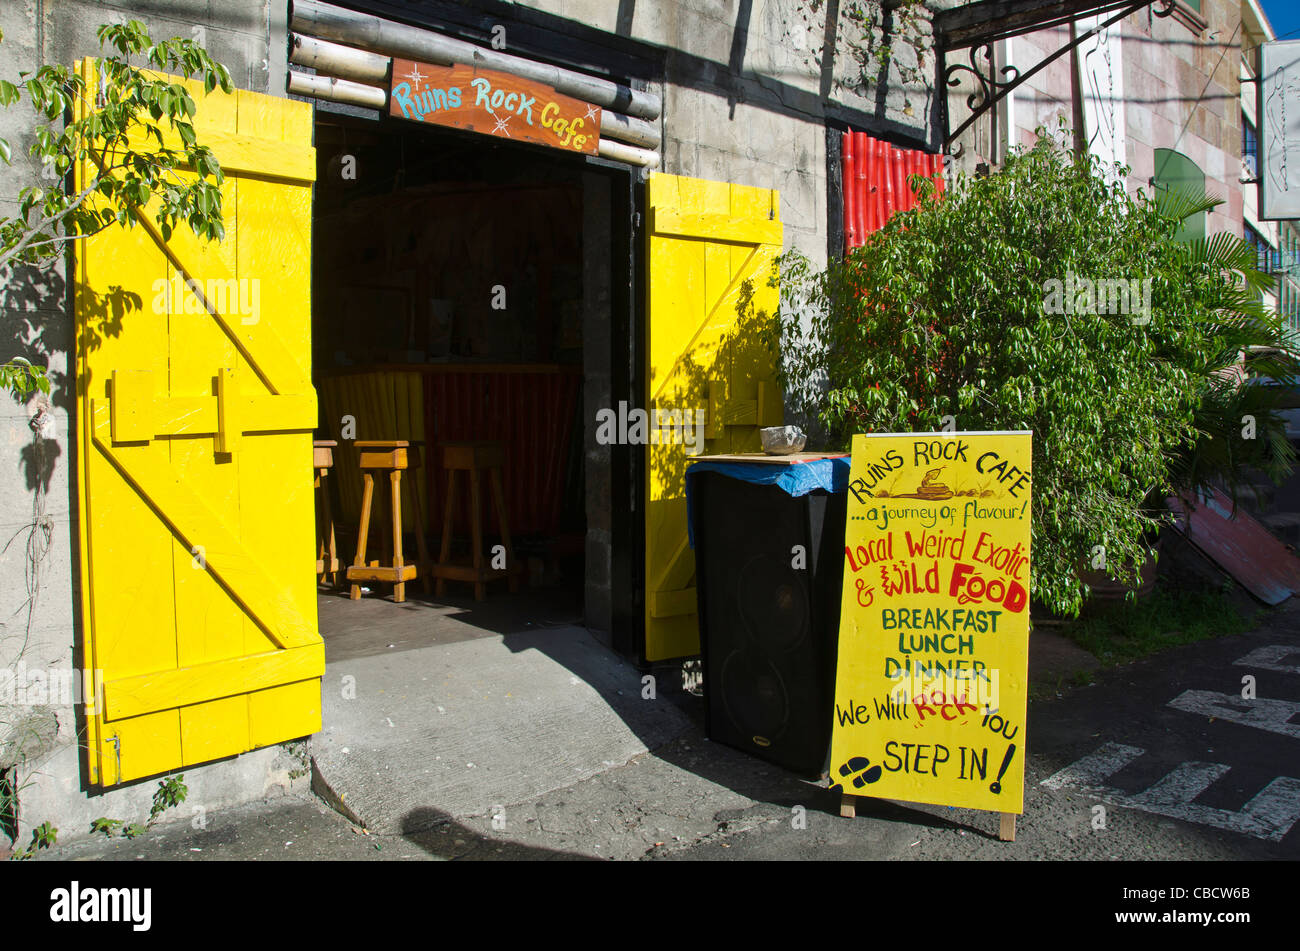 Ruines Rock Cafe entrée avec 'local bizarre & exotique nourriture sauvage, DOMINIQUE Roseau' Banque D'Images